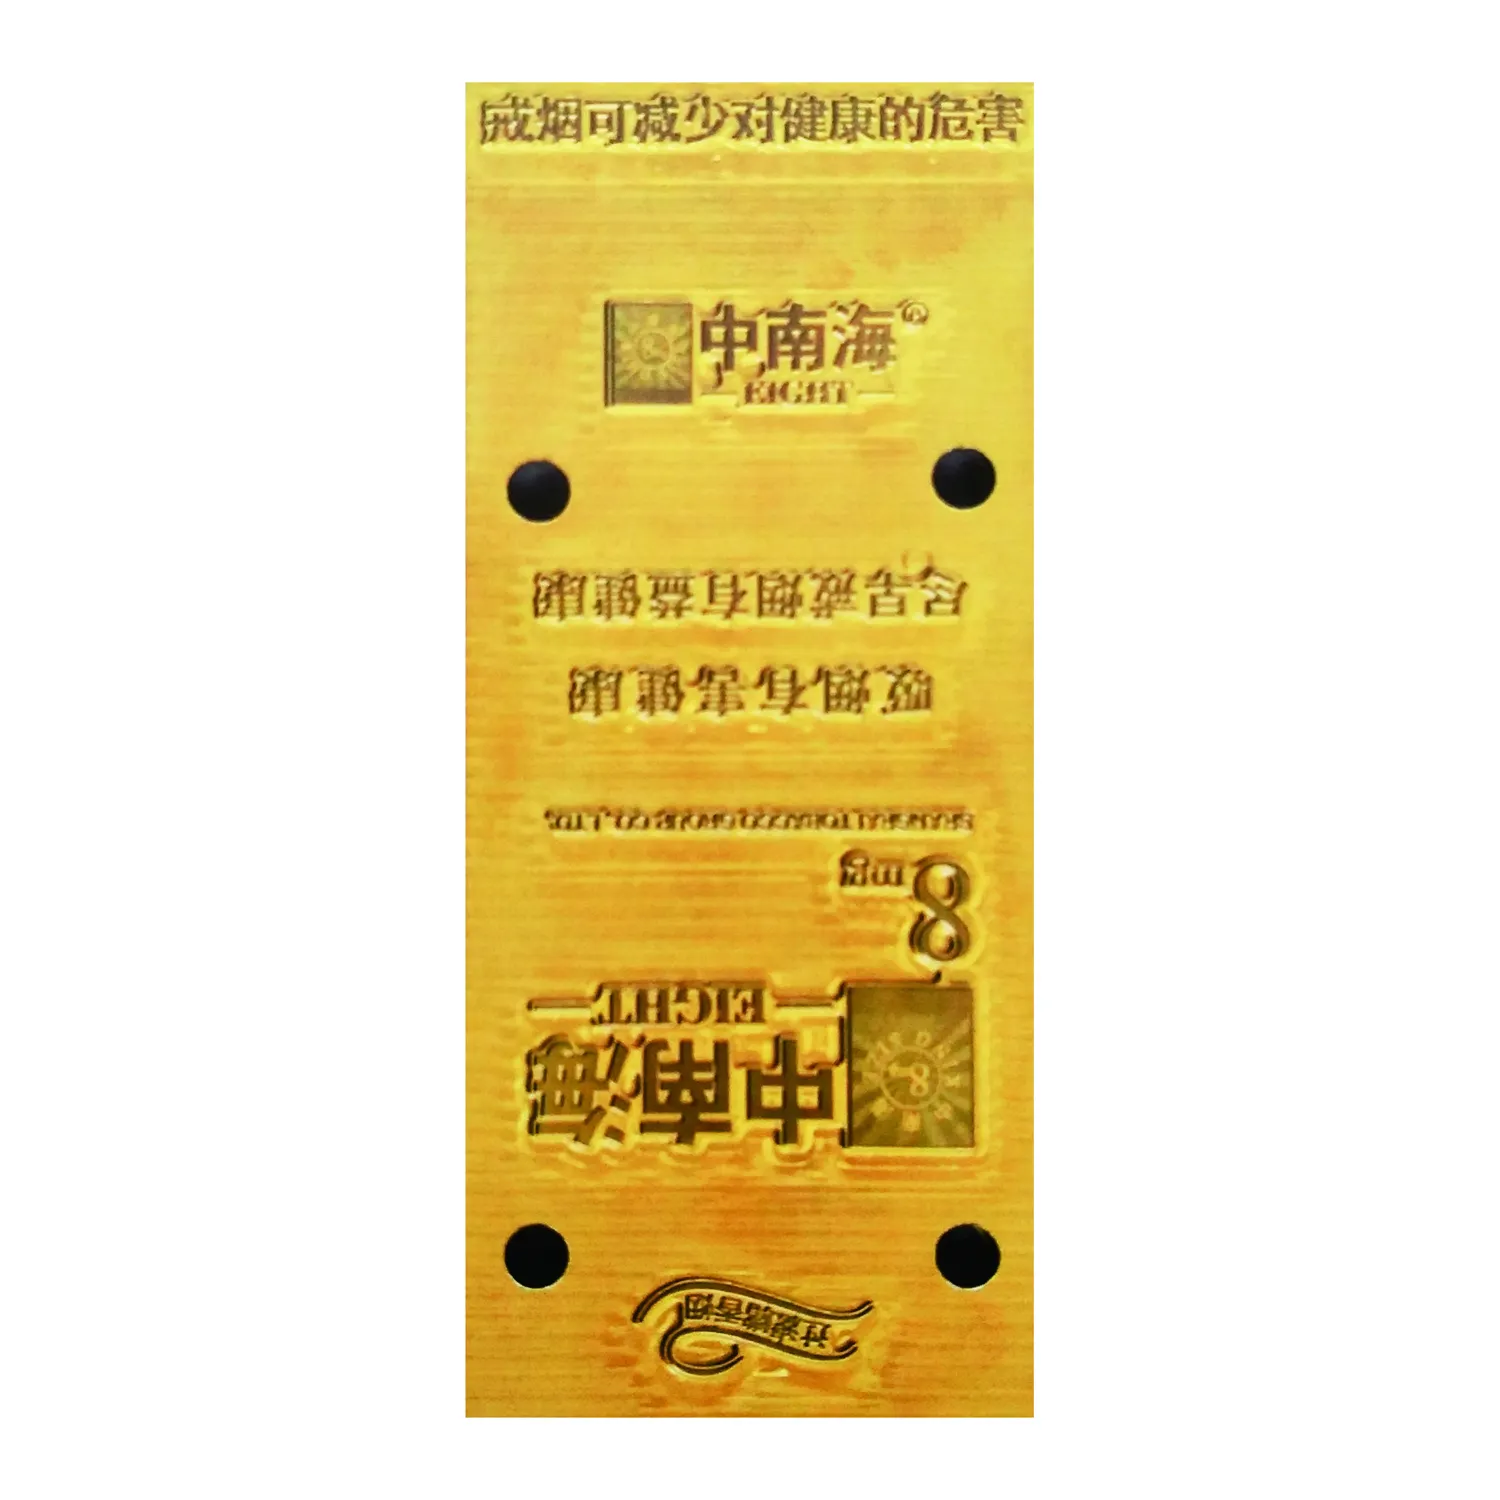 OEM ODM Kupfermatrize Multi-Funktions-Hochprägemaschine für Leder Papier Pvc-Karte Heißprägung Vorrichtung Prägetwerkzeug